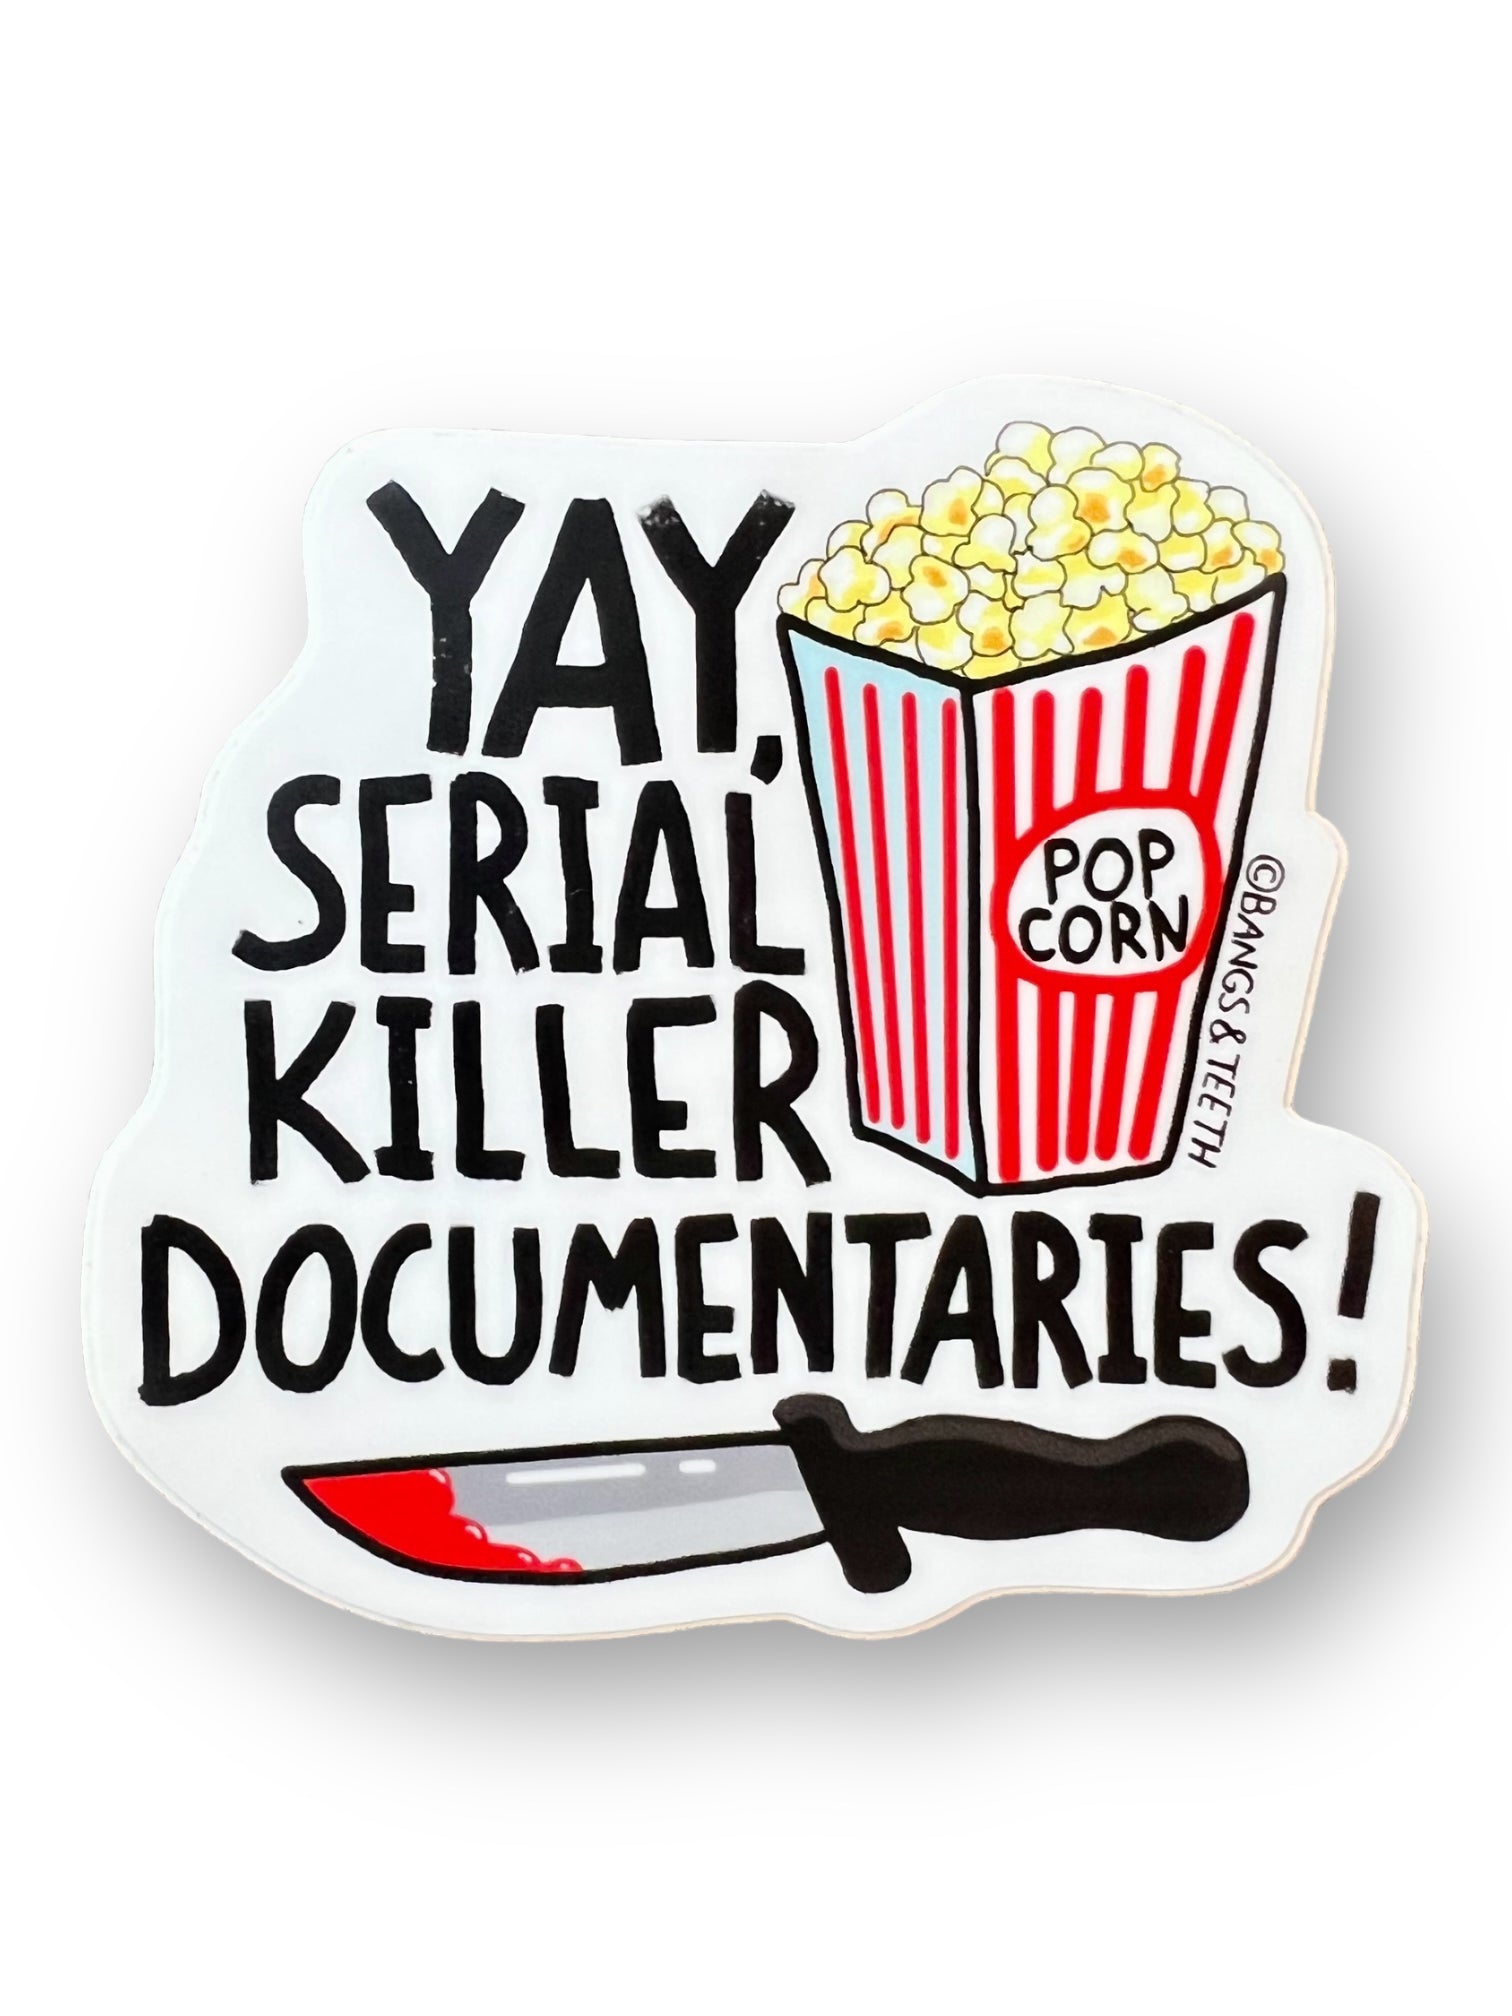 Killer Documentaries Sticker